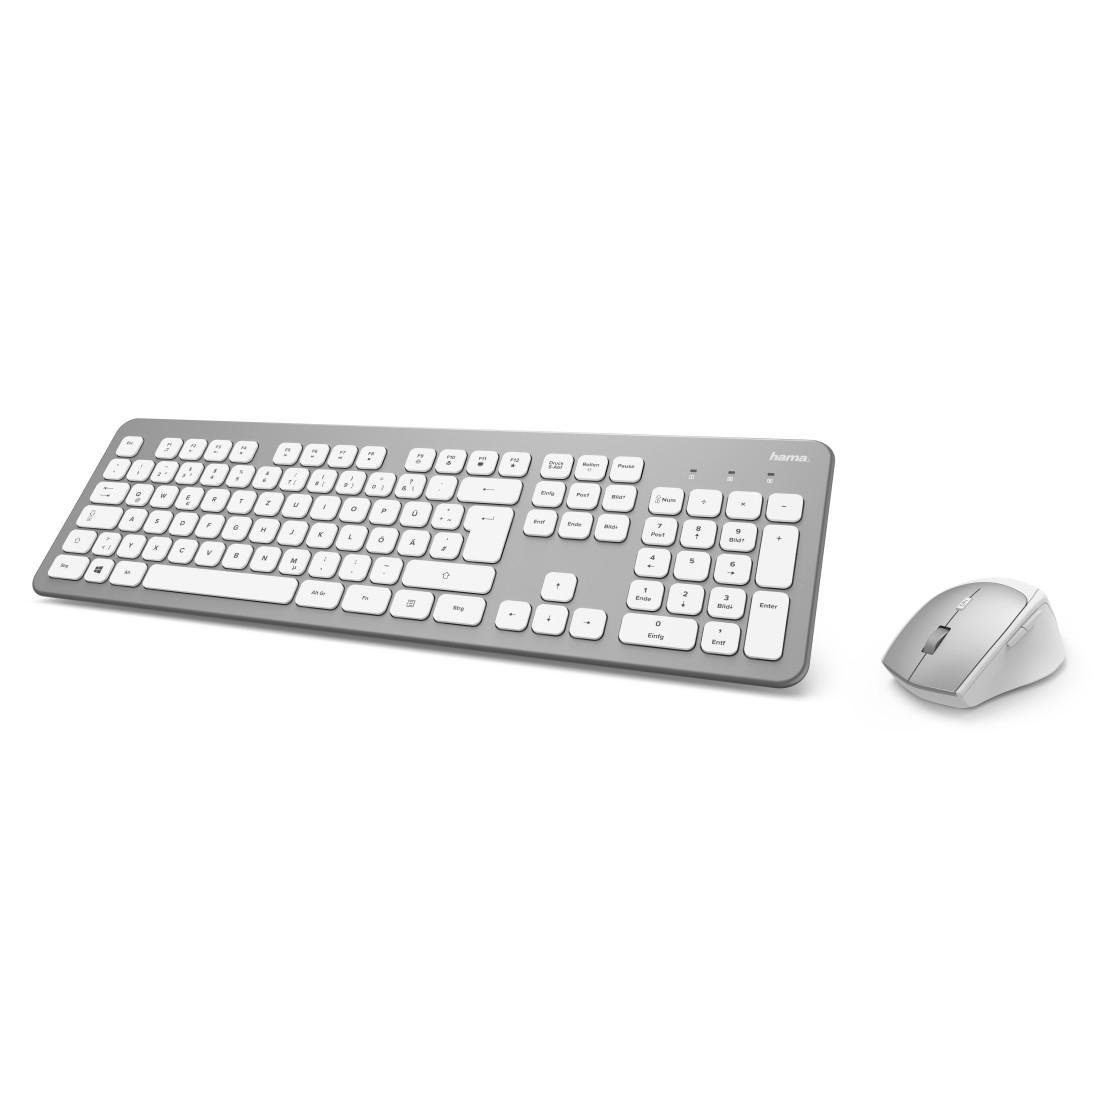 Funktastatur-/Maus-Set Tastatur- "KMW-700" weiß Tastatur/Maus-Set Hama und Maus-Set